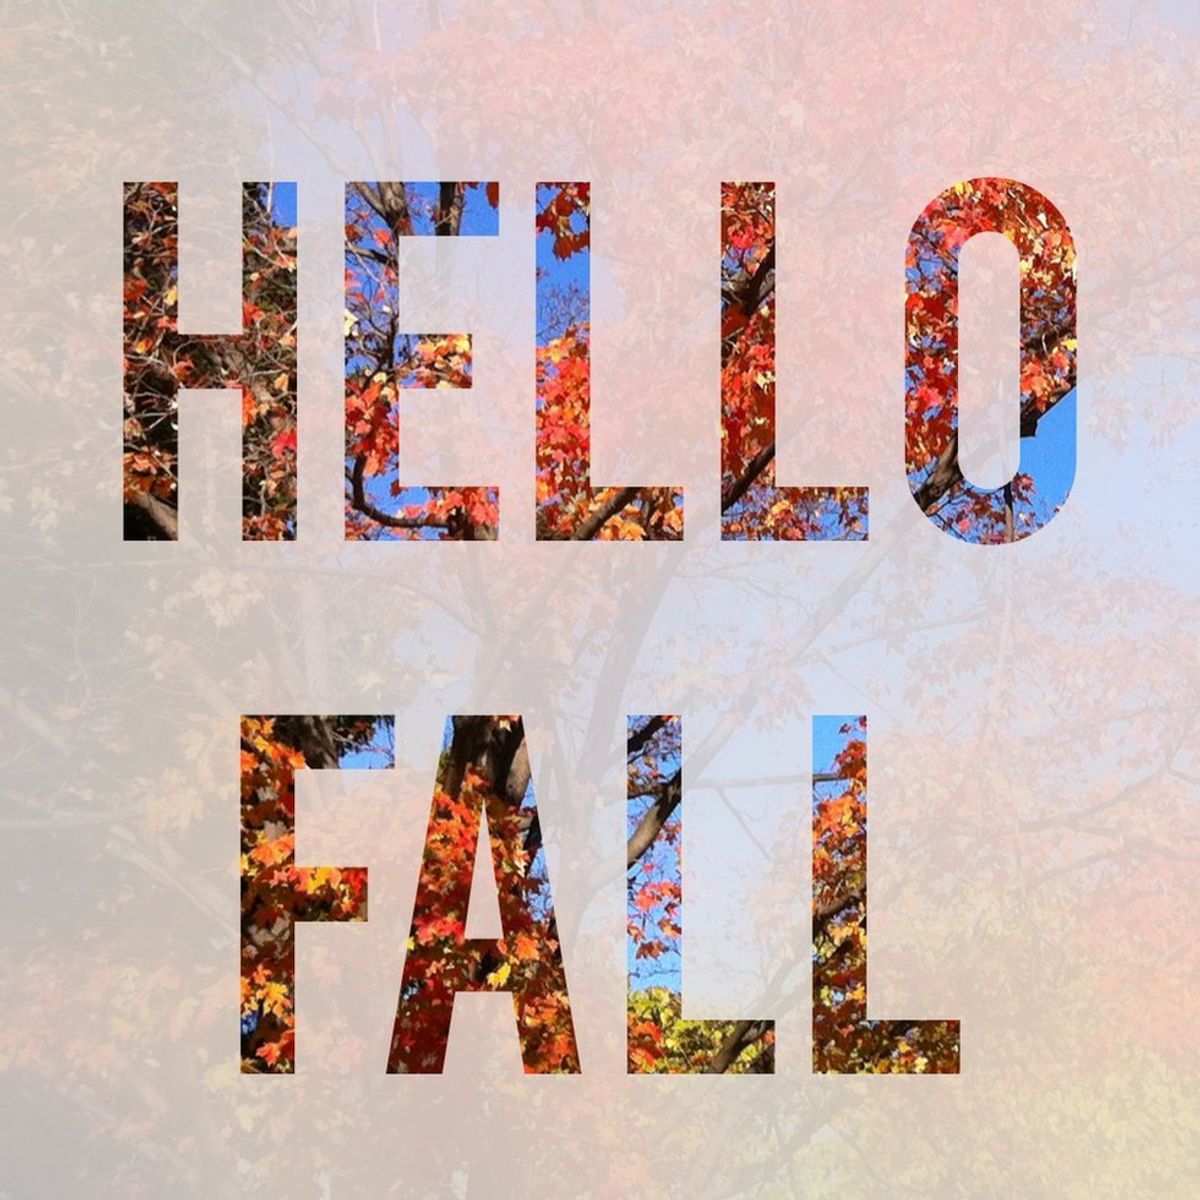 Why I Love Fall